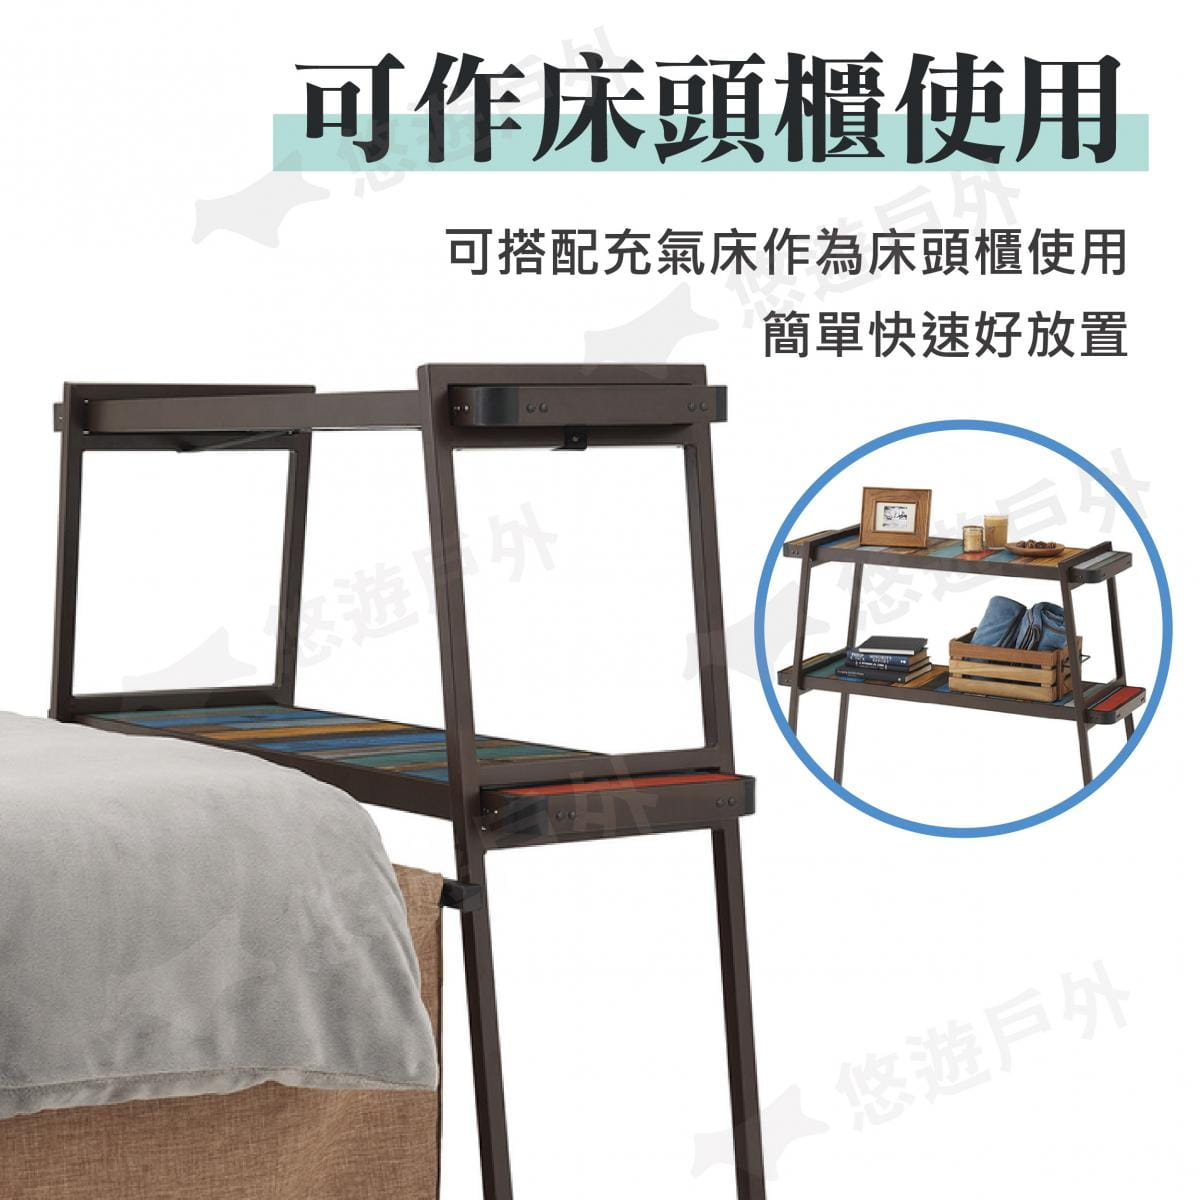 【日本LOGOS】G/B野營雙層收納桌 Gran Basic床款板架 LG73200035 1